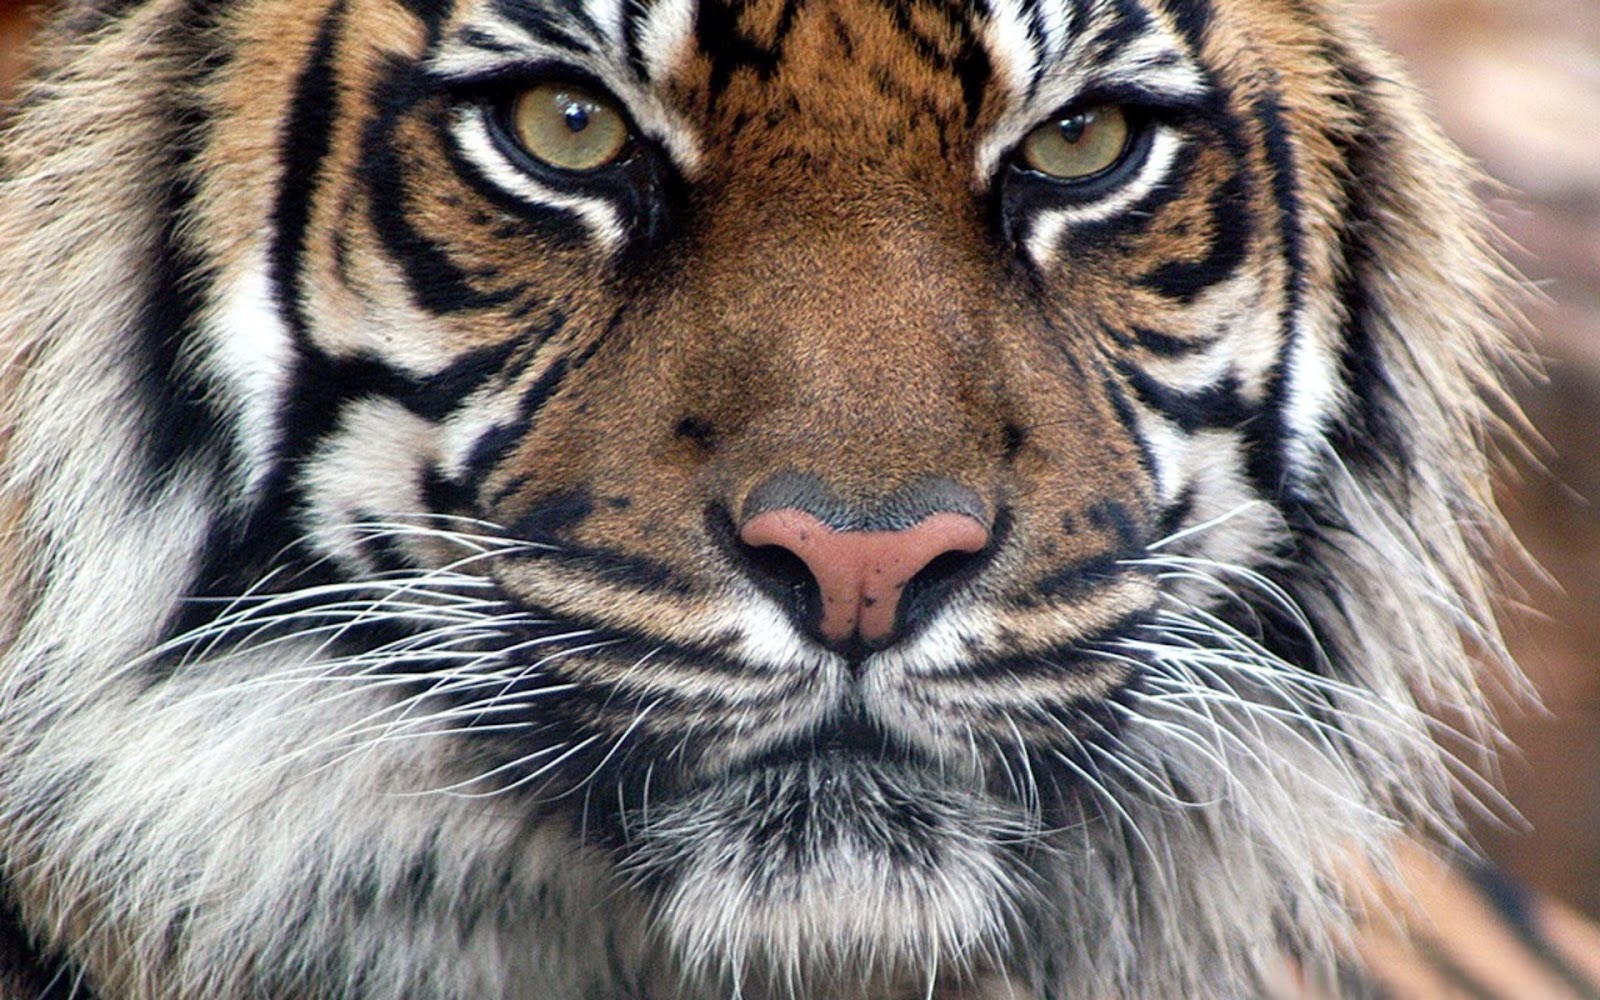 bengal tiger tapete,tiger,tierwelt,landtier,bengalischer tiger,schnurrhaare